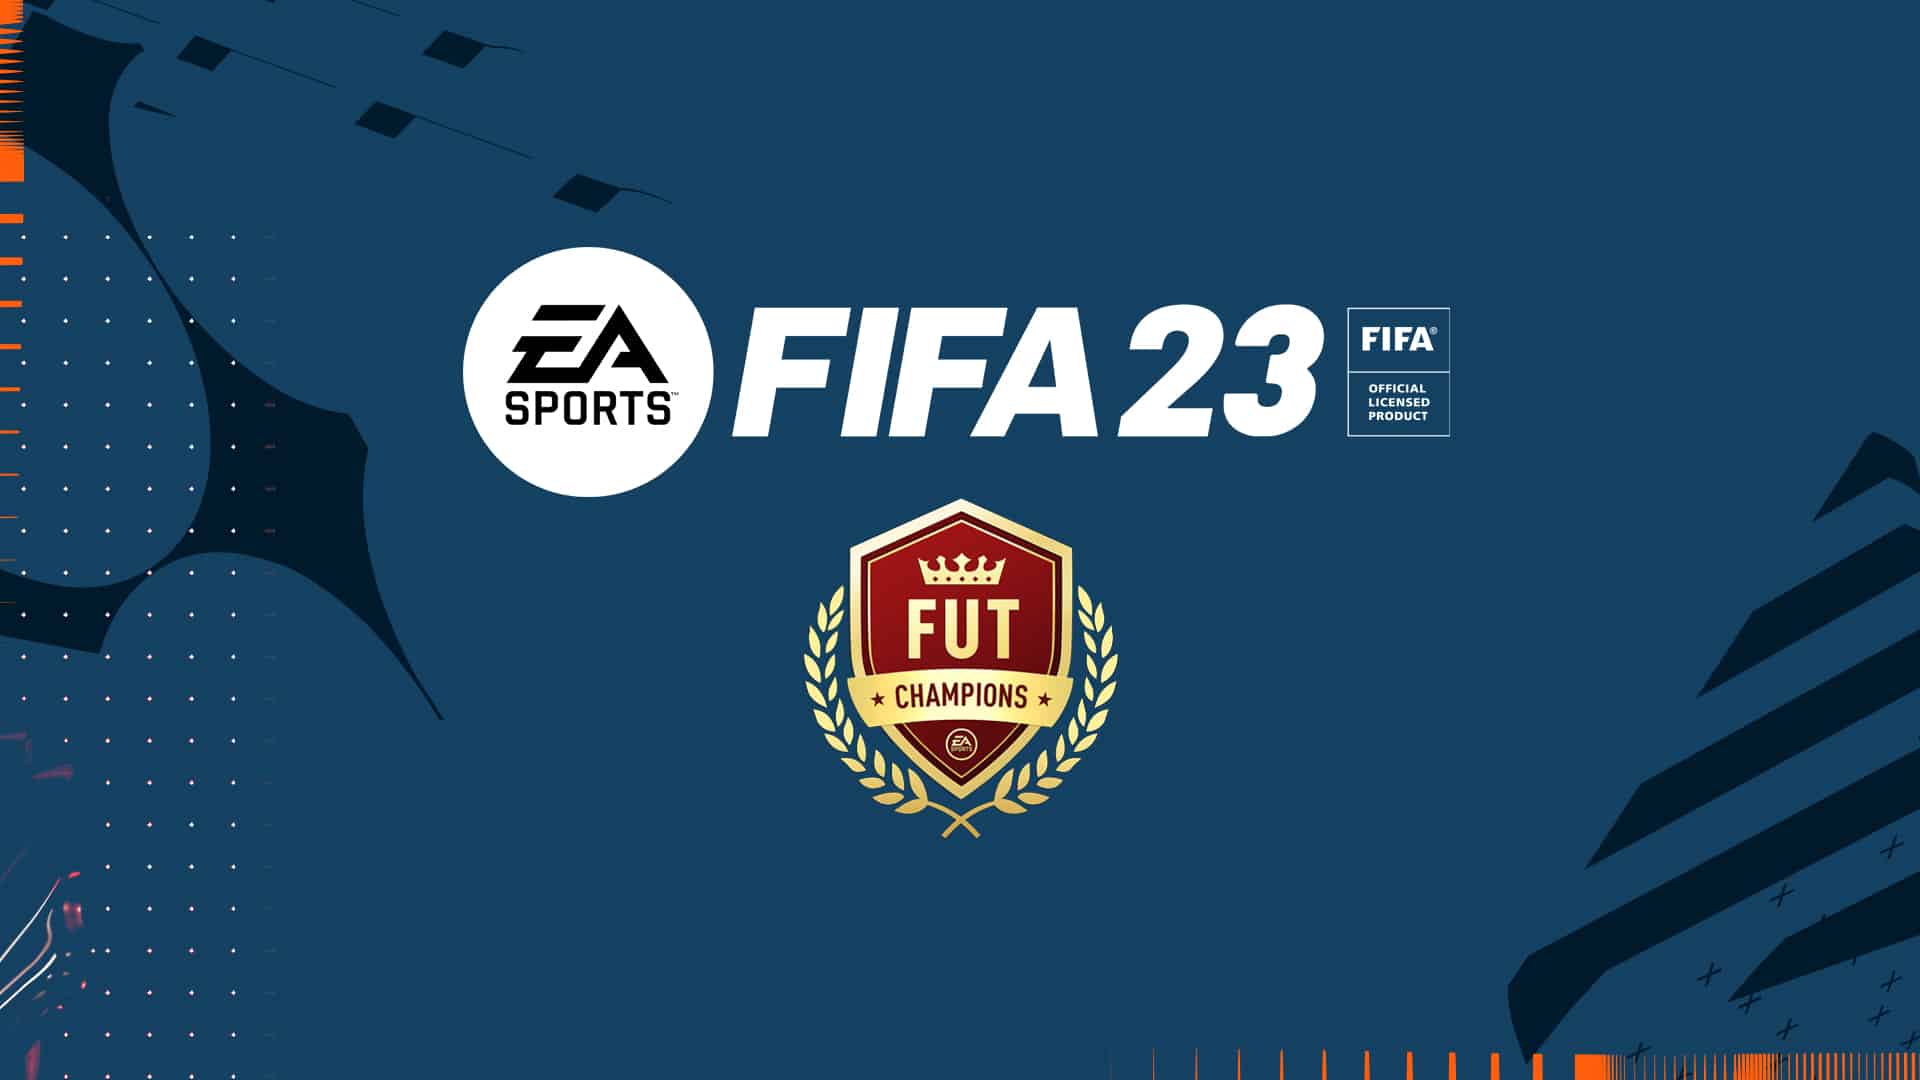 FUT CHAMPIONS FINALS FIFA 23